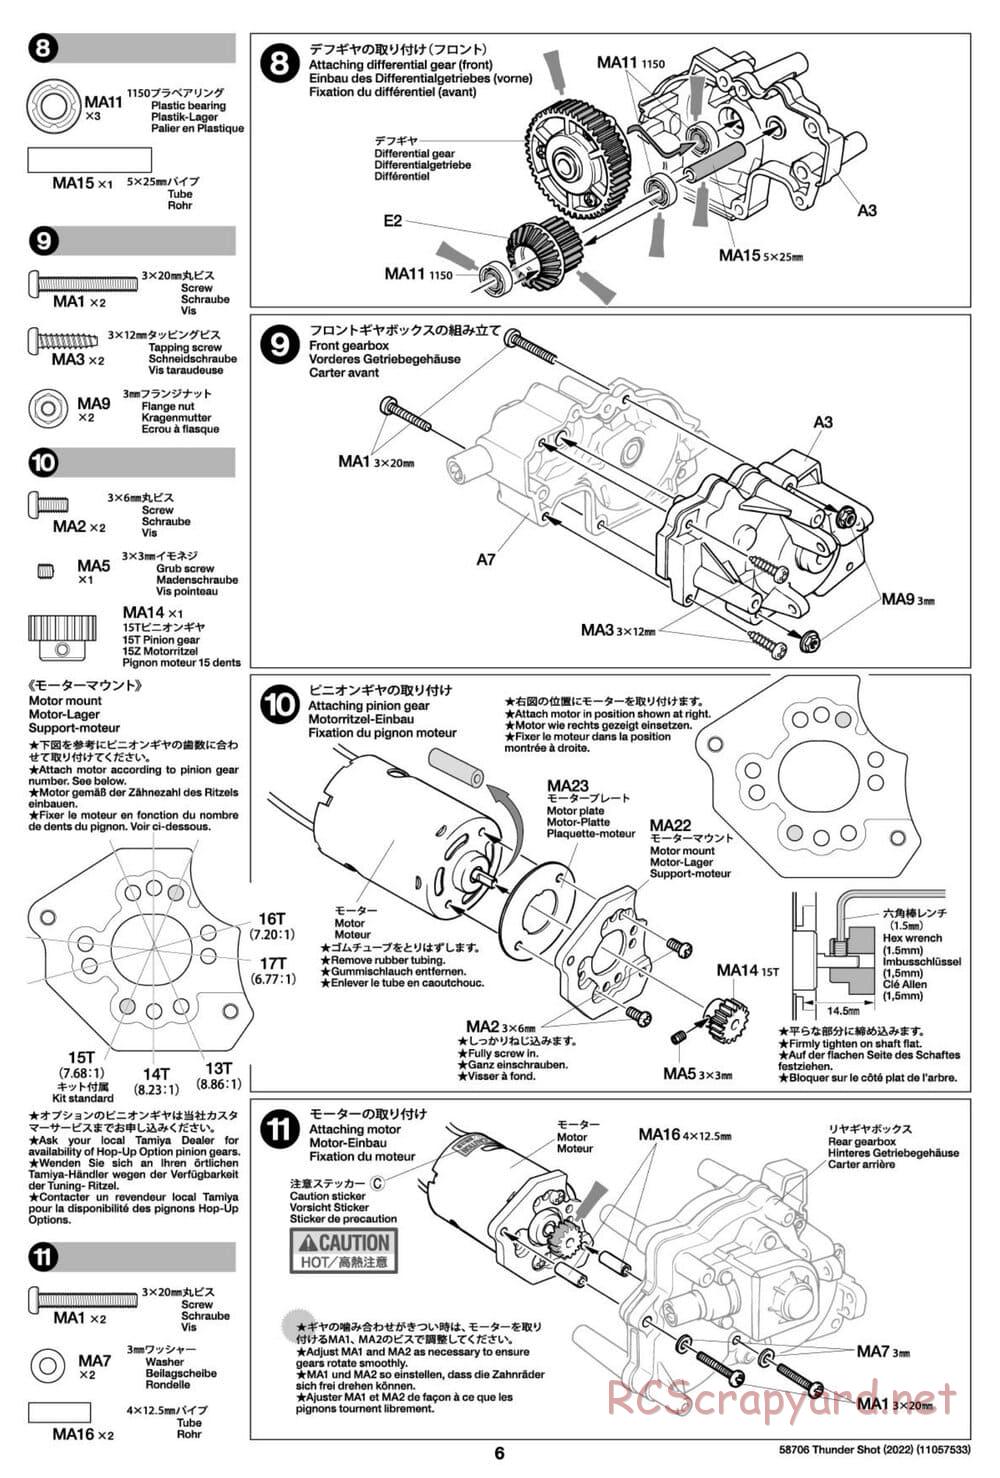 Tamiya - Thunder Shot (2022) - TS1/TS2 Chassis - Manual - Page 6